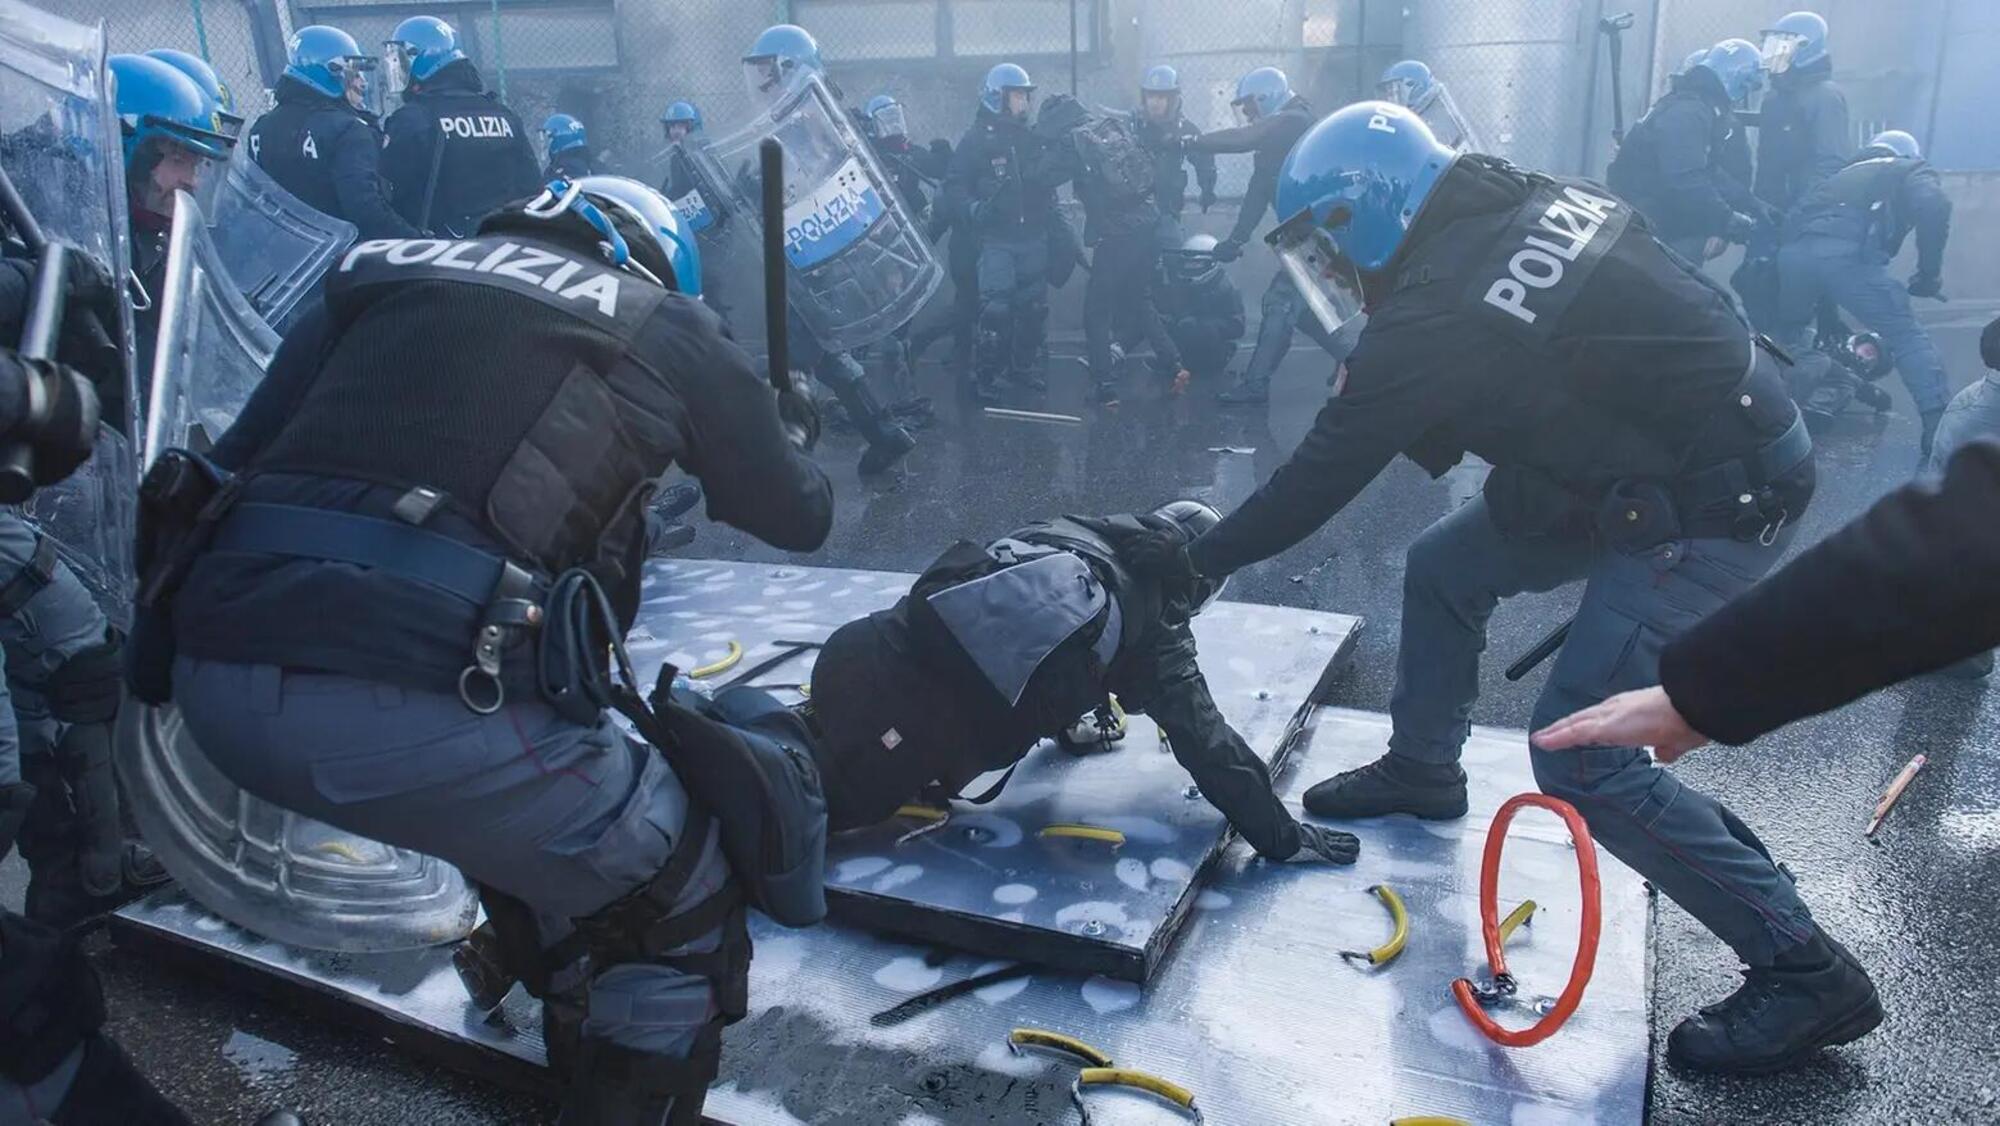 scontri tra polizia e manifestanti alla fiera di vicenza